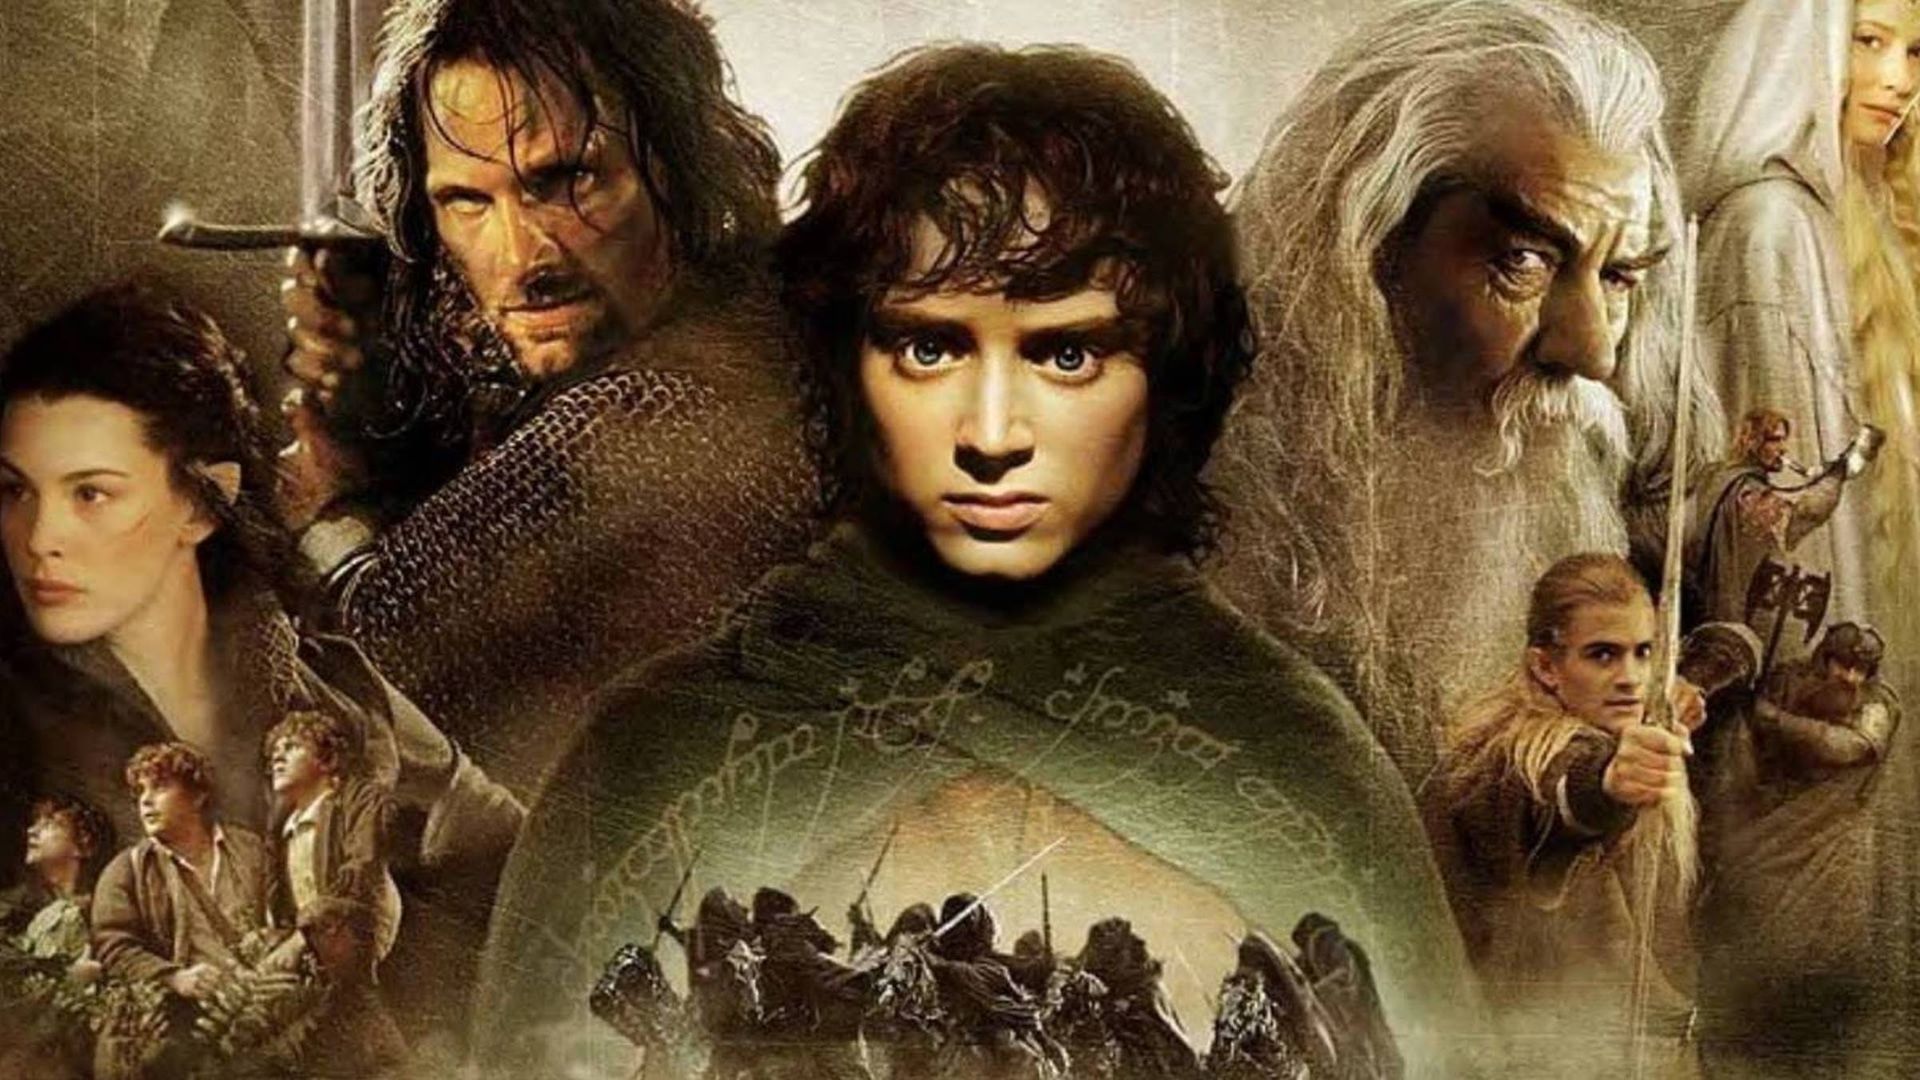 Переможець музичної битви: Саундтрек "The Lord Of The Rings", створений Говардом Шором, обійшов "Star Wars" і "Schindler's List" 